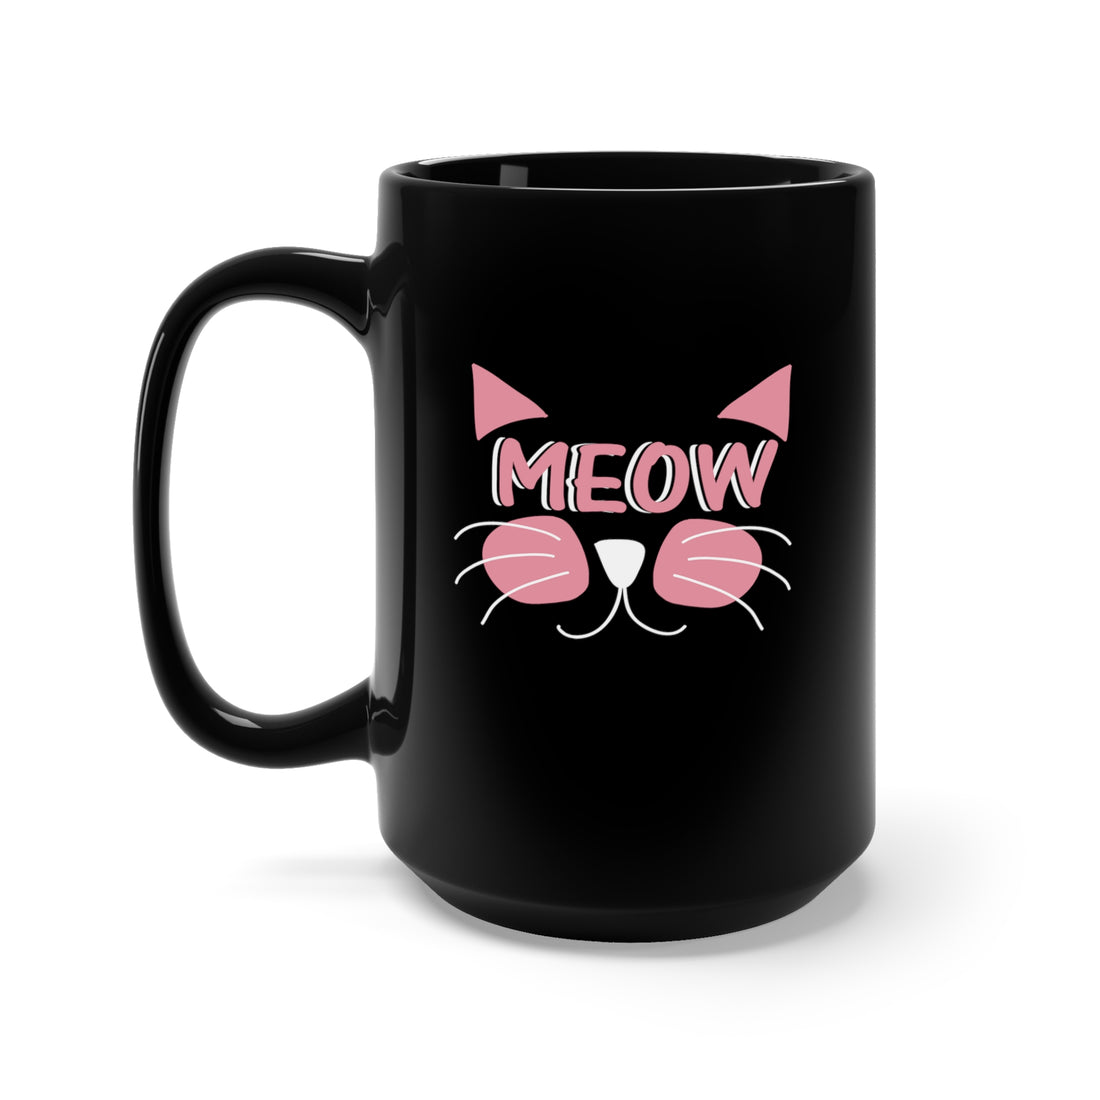 Meow - Large 15oz Black Mug